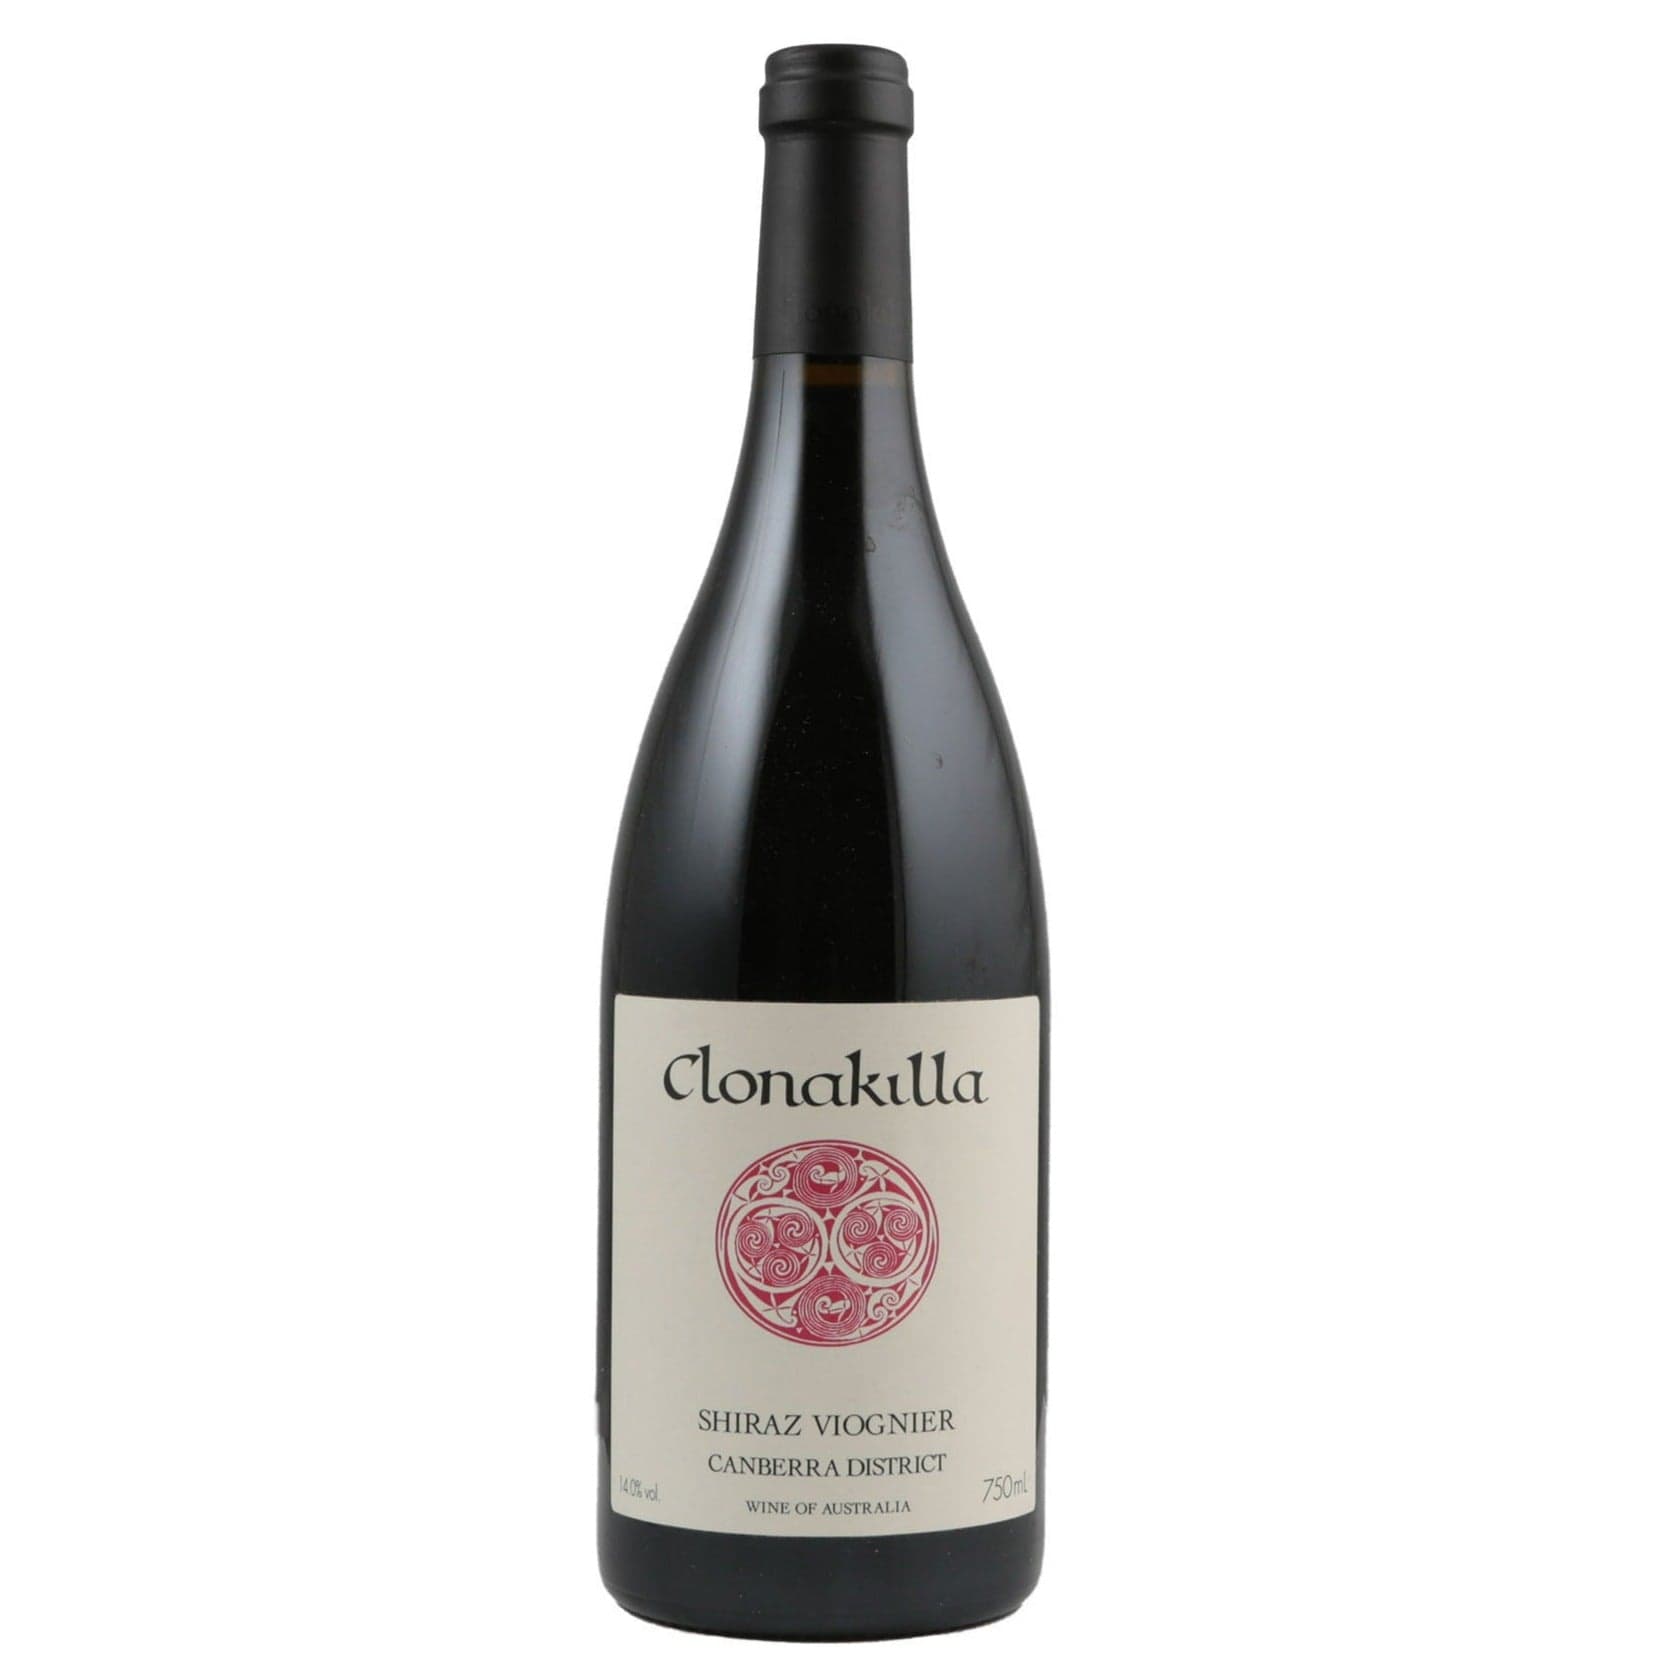 Single bottle of Red wine Clonakilla, Shiraz-Viognier Canberra District, 2010 95% Shiraz, 5% Viognier